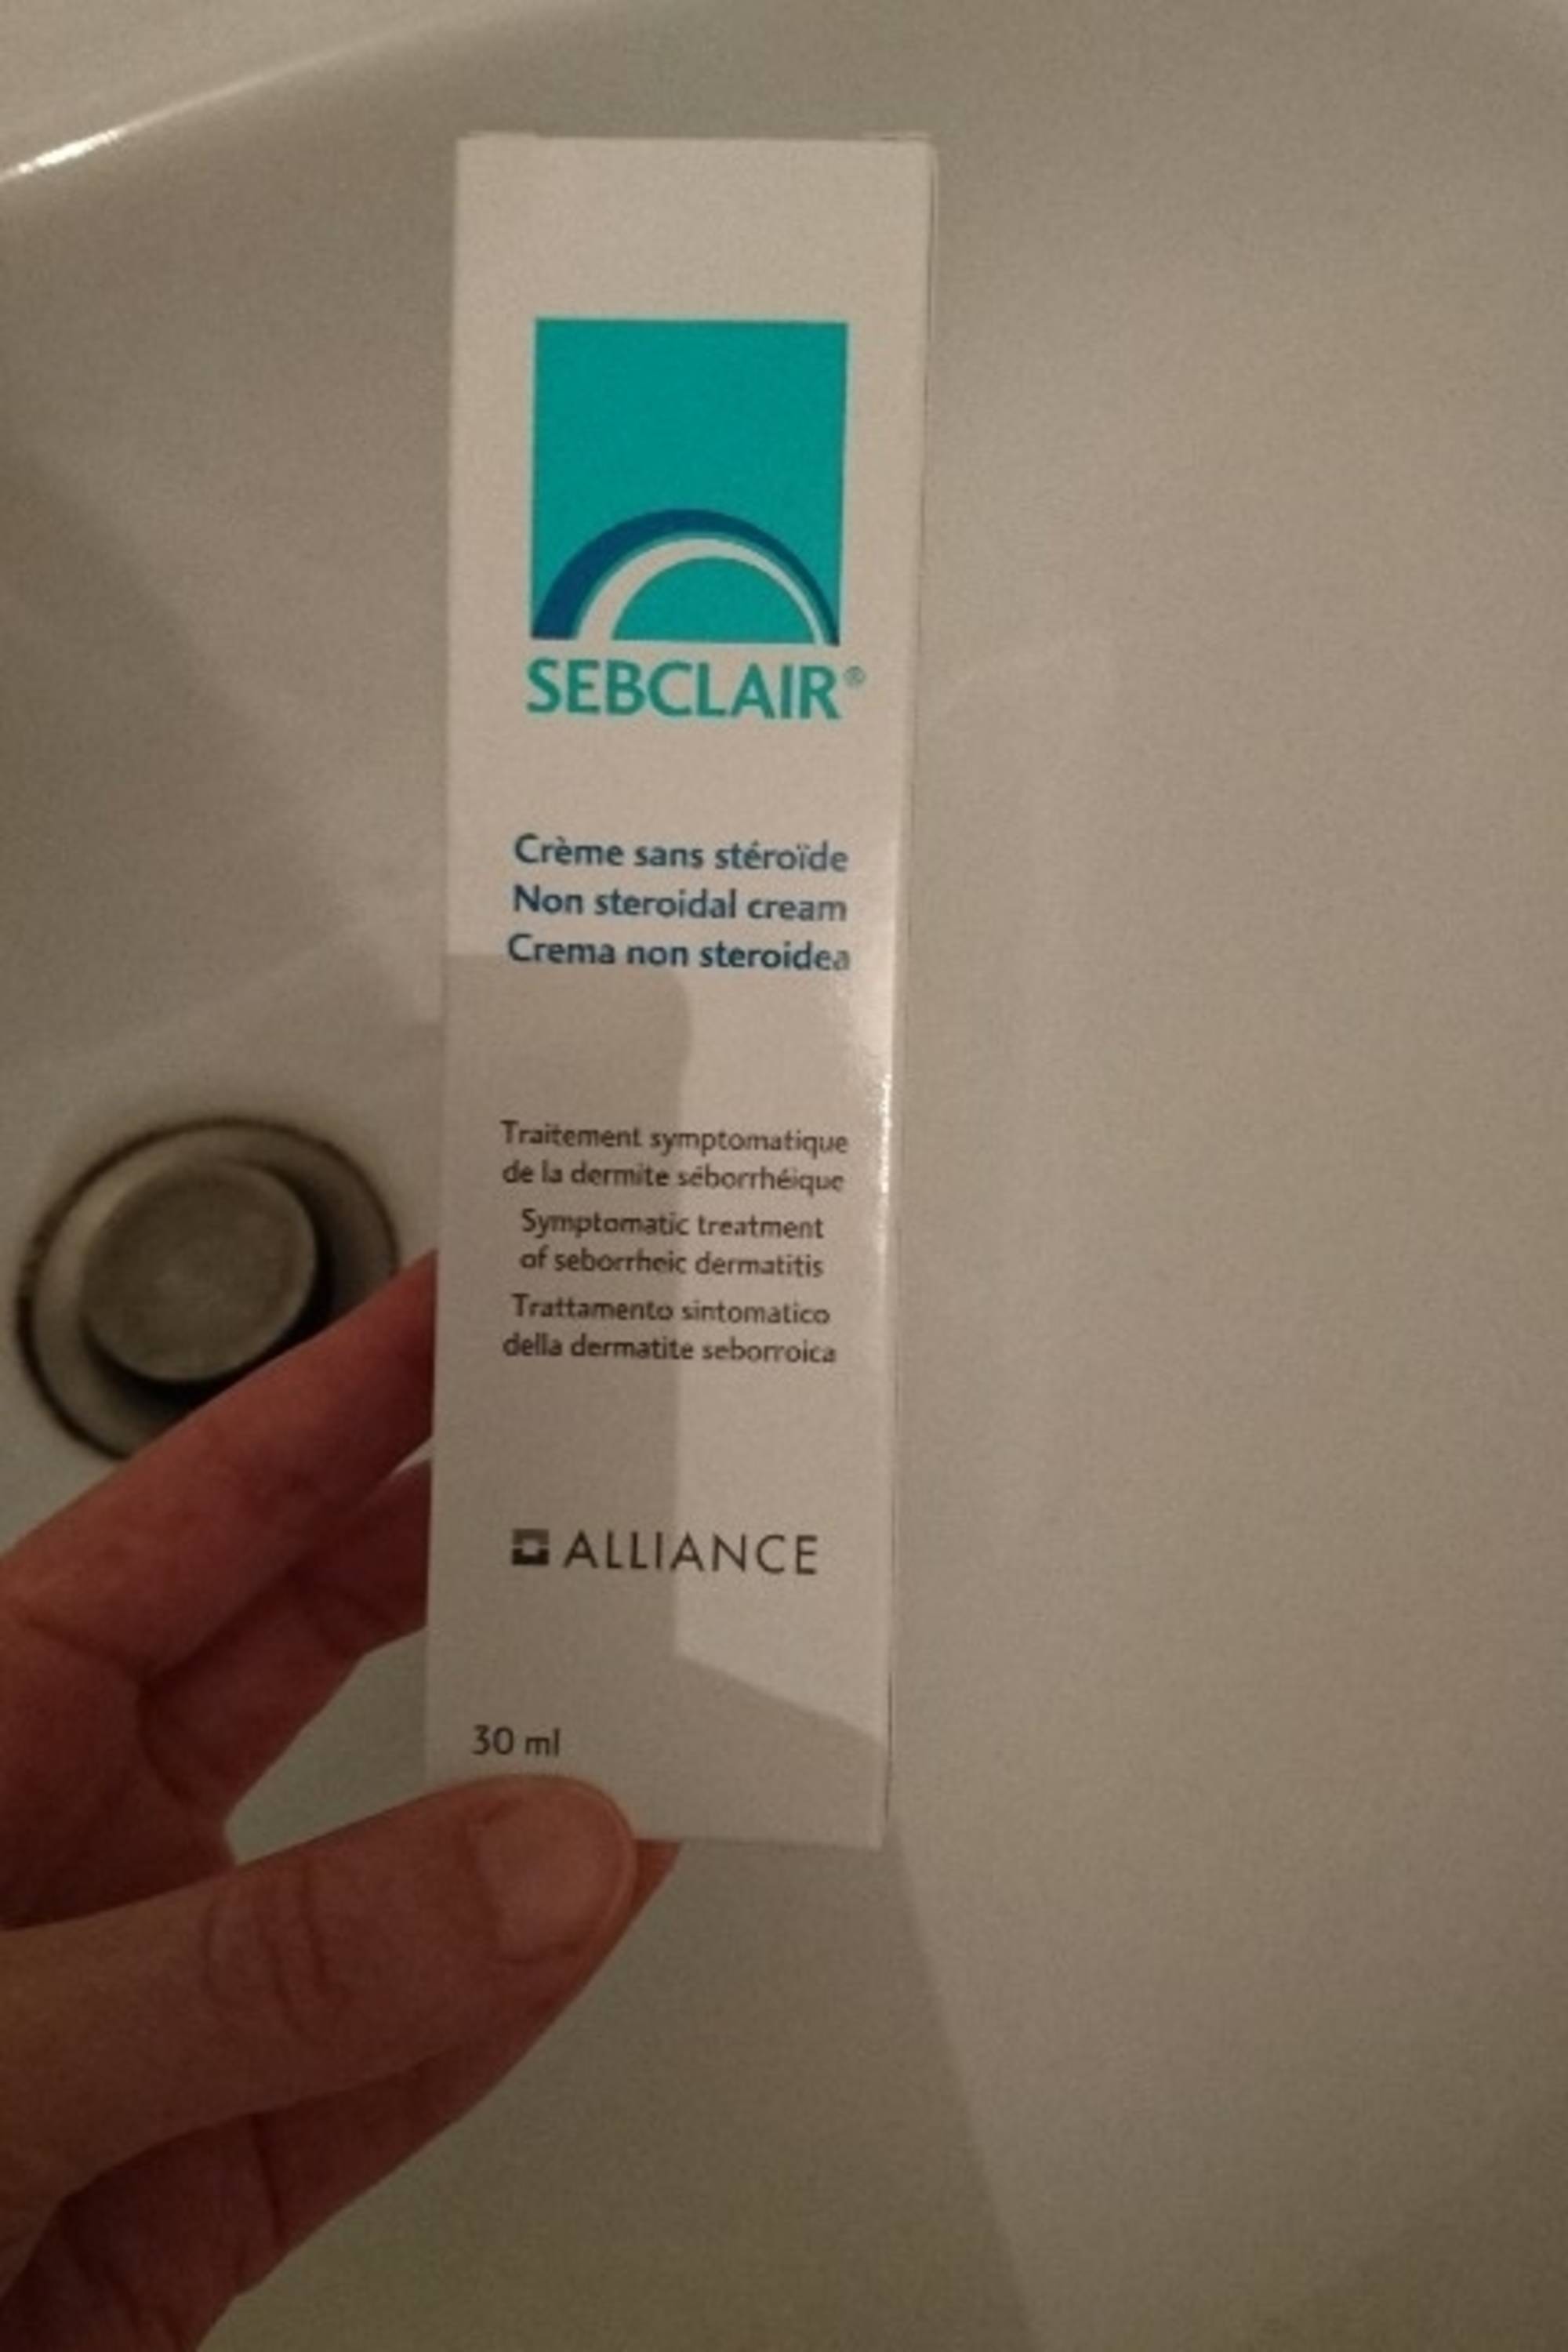 SEBCLAIR - Alliance - Crème sans stéroïde